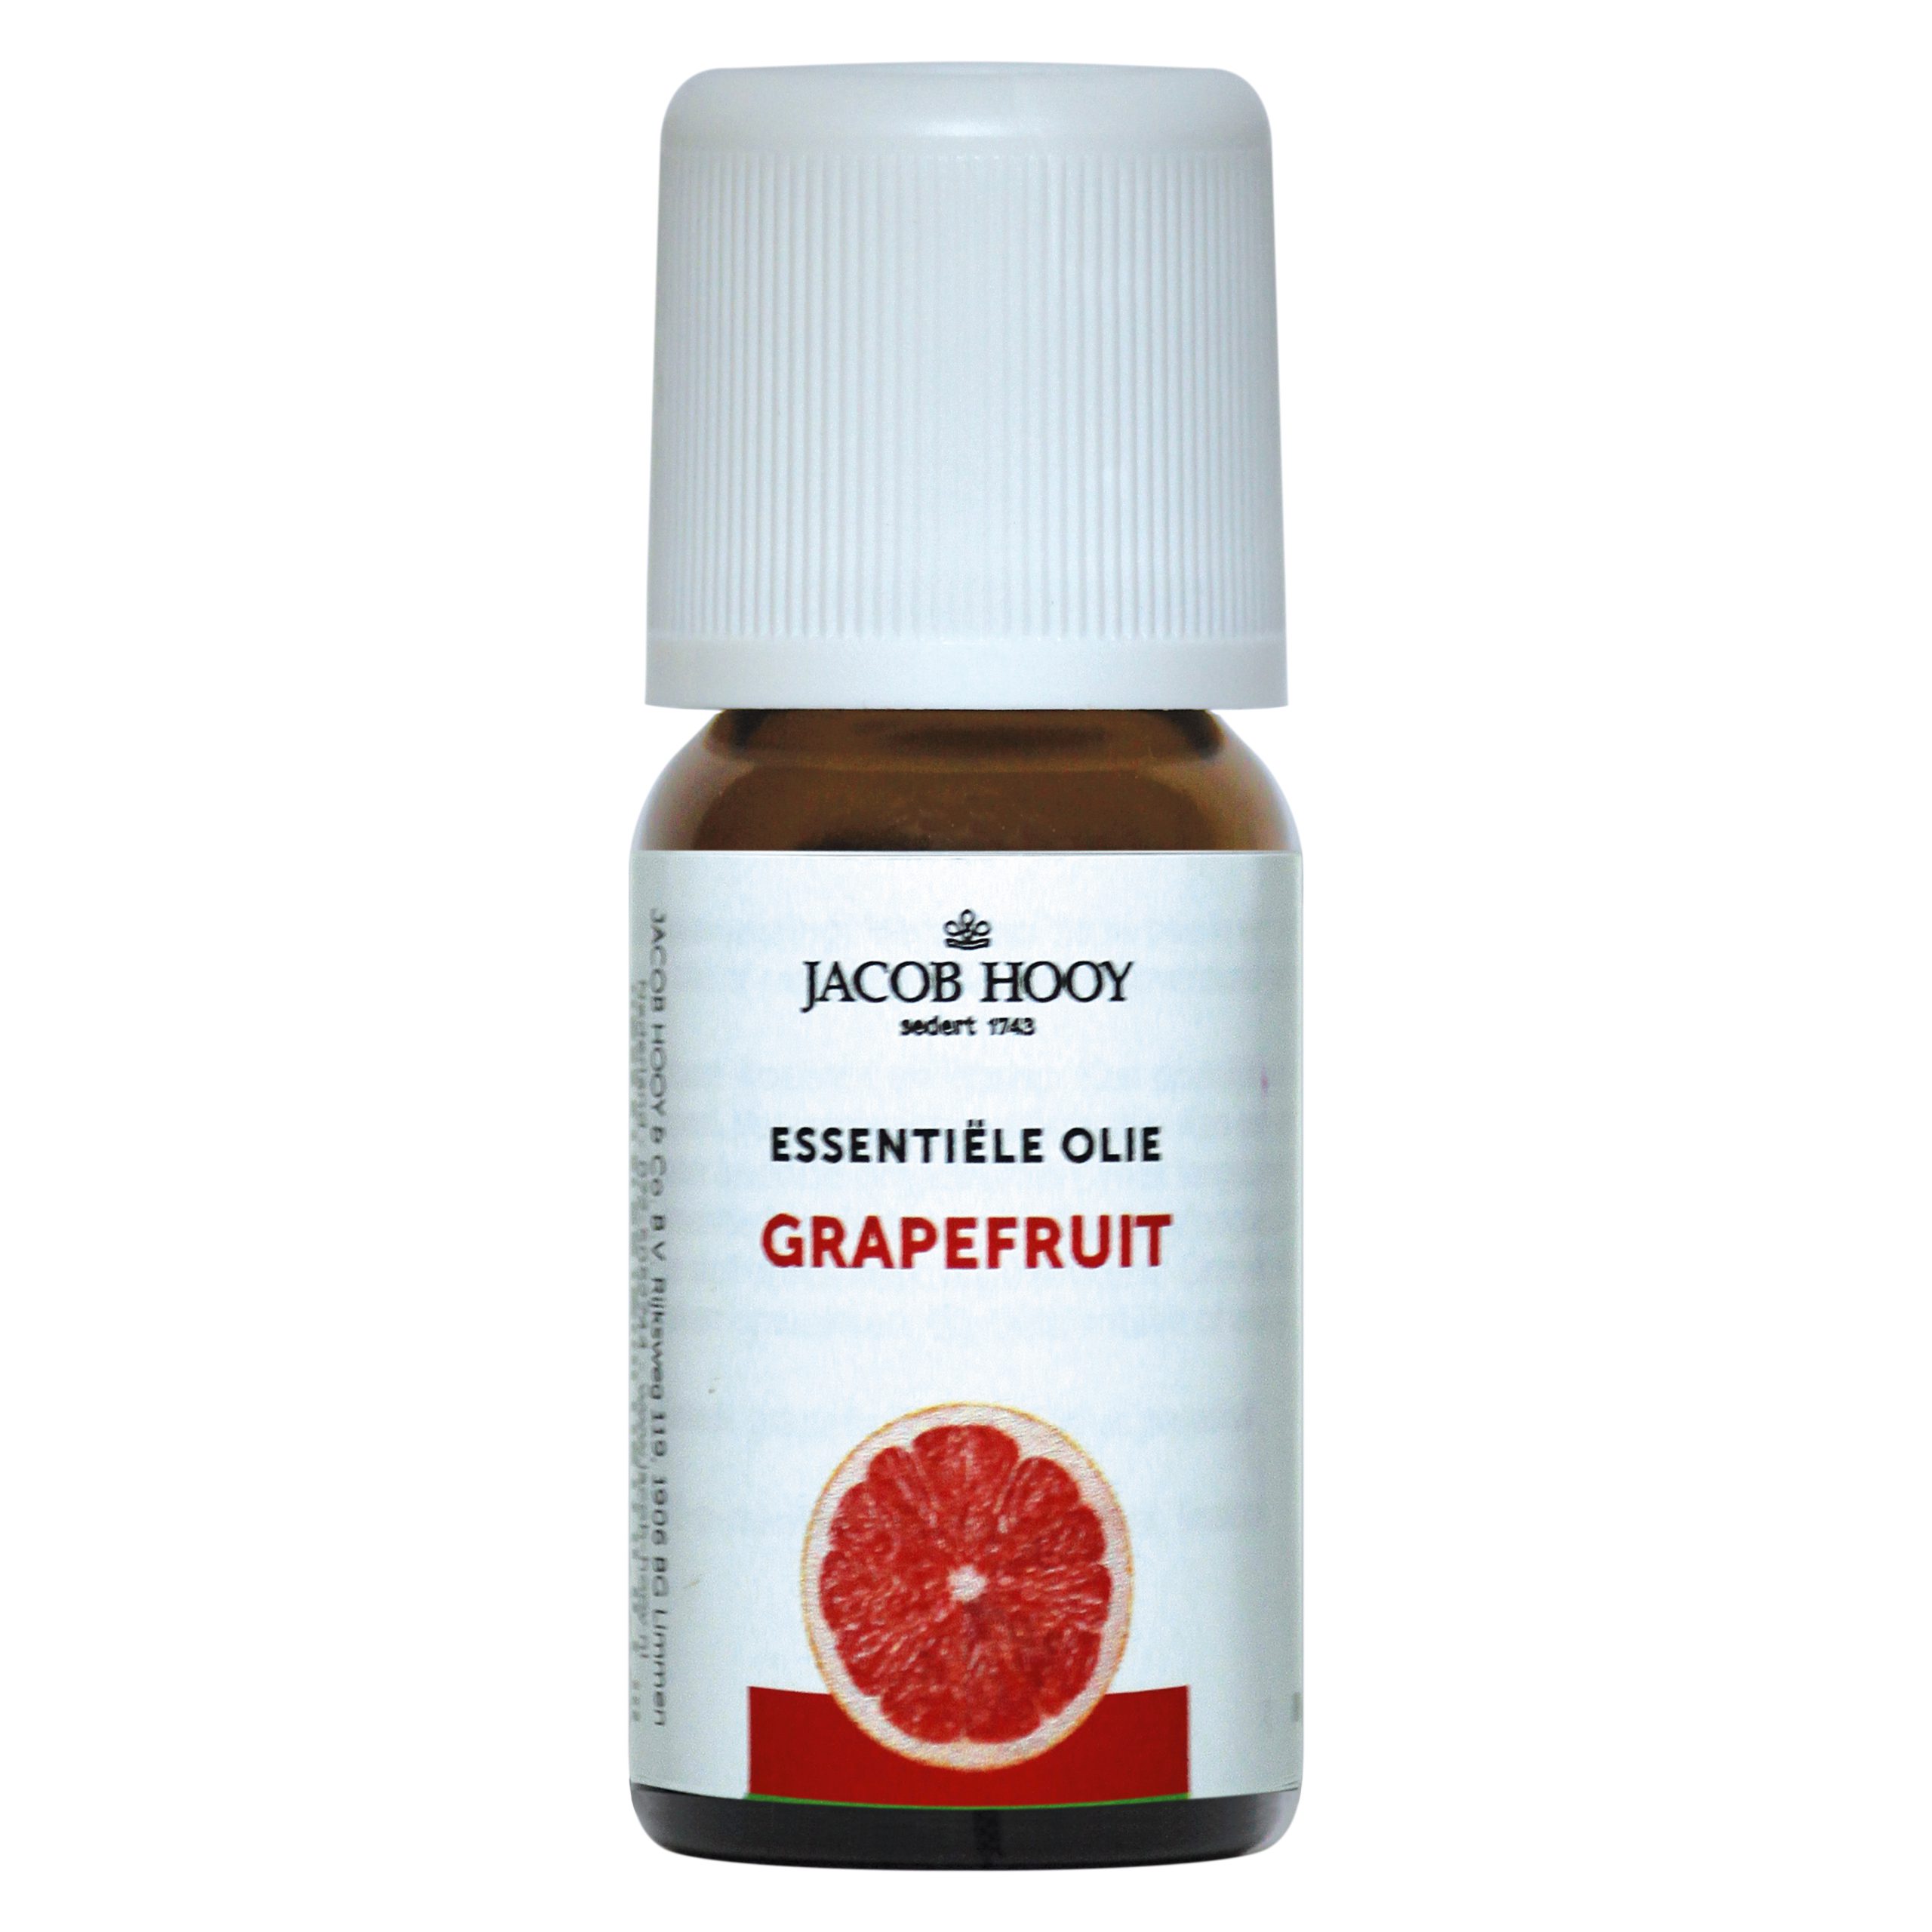 Essentiële olie Grapefruit 10 ml